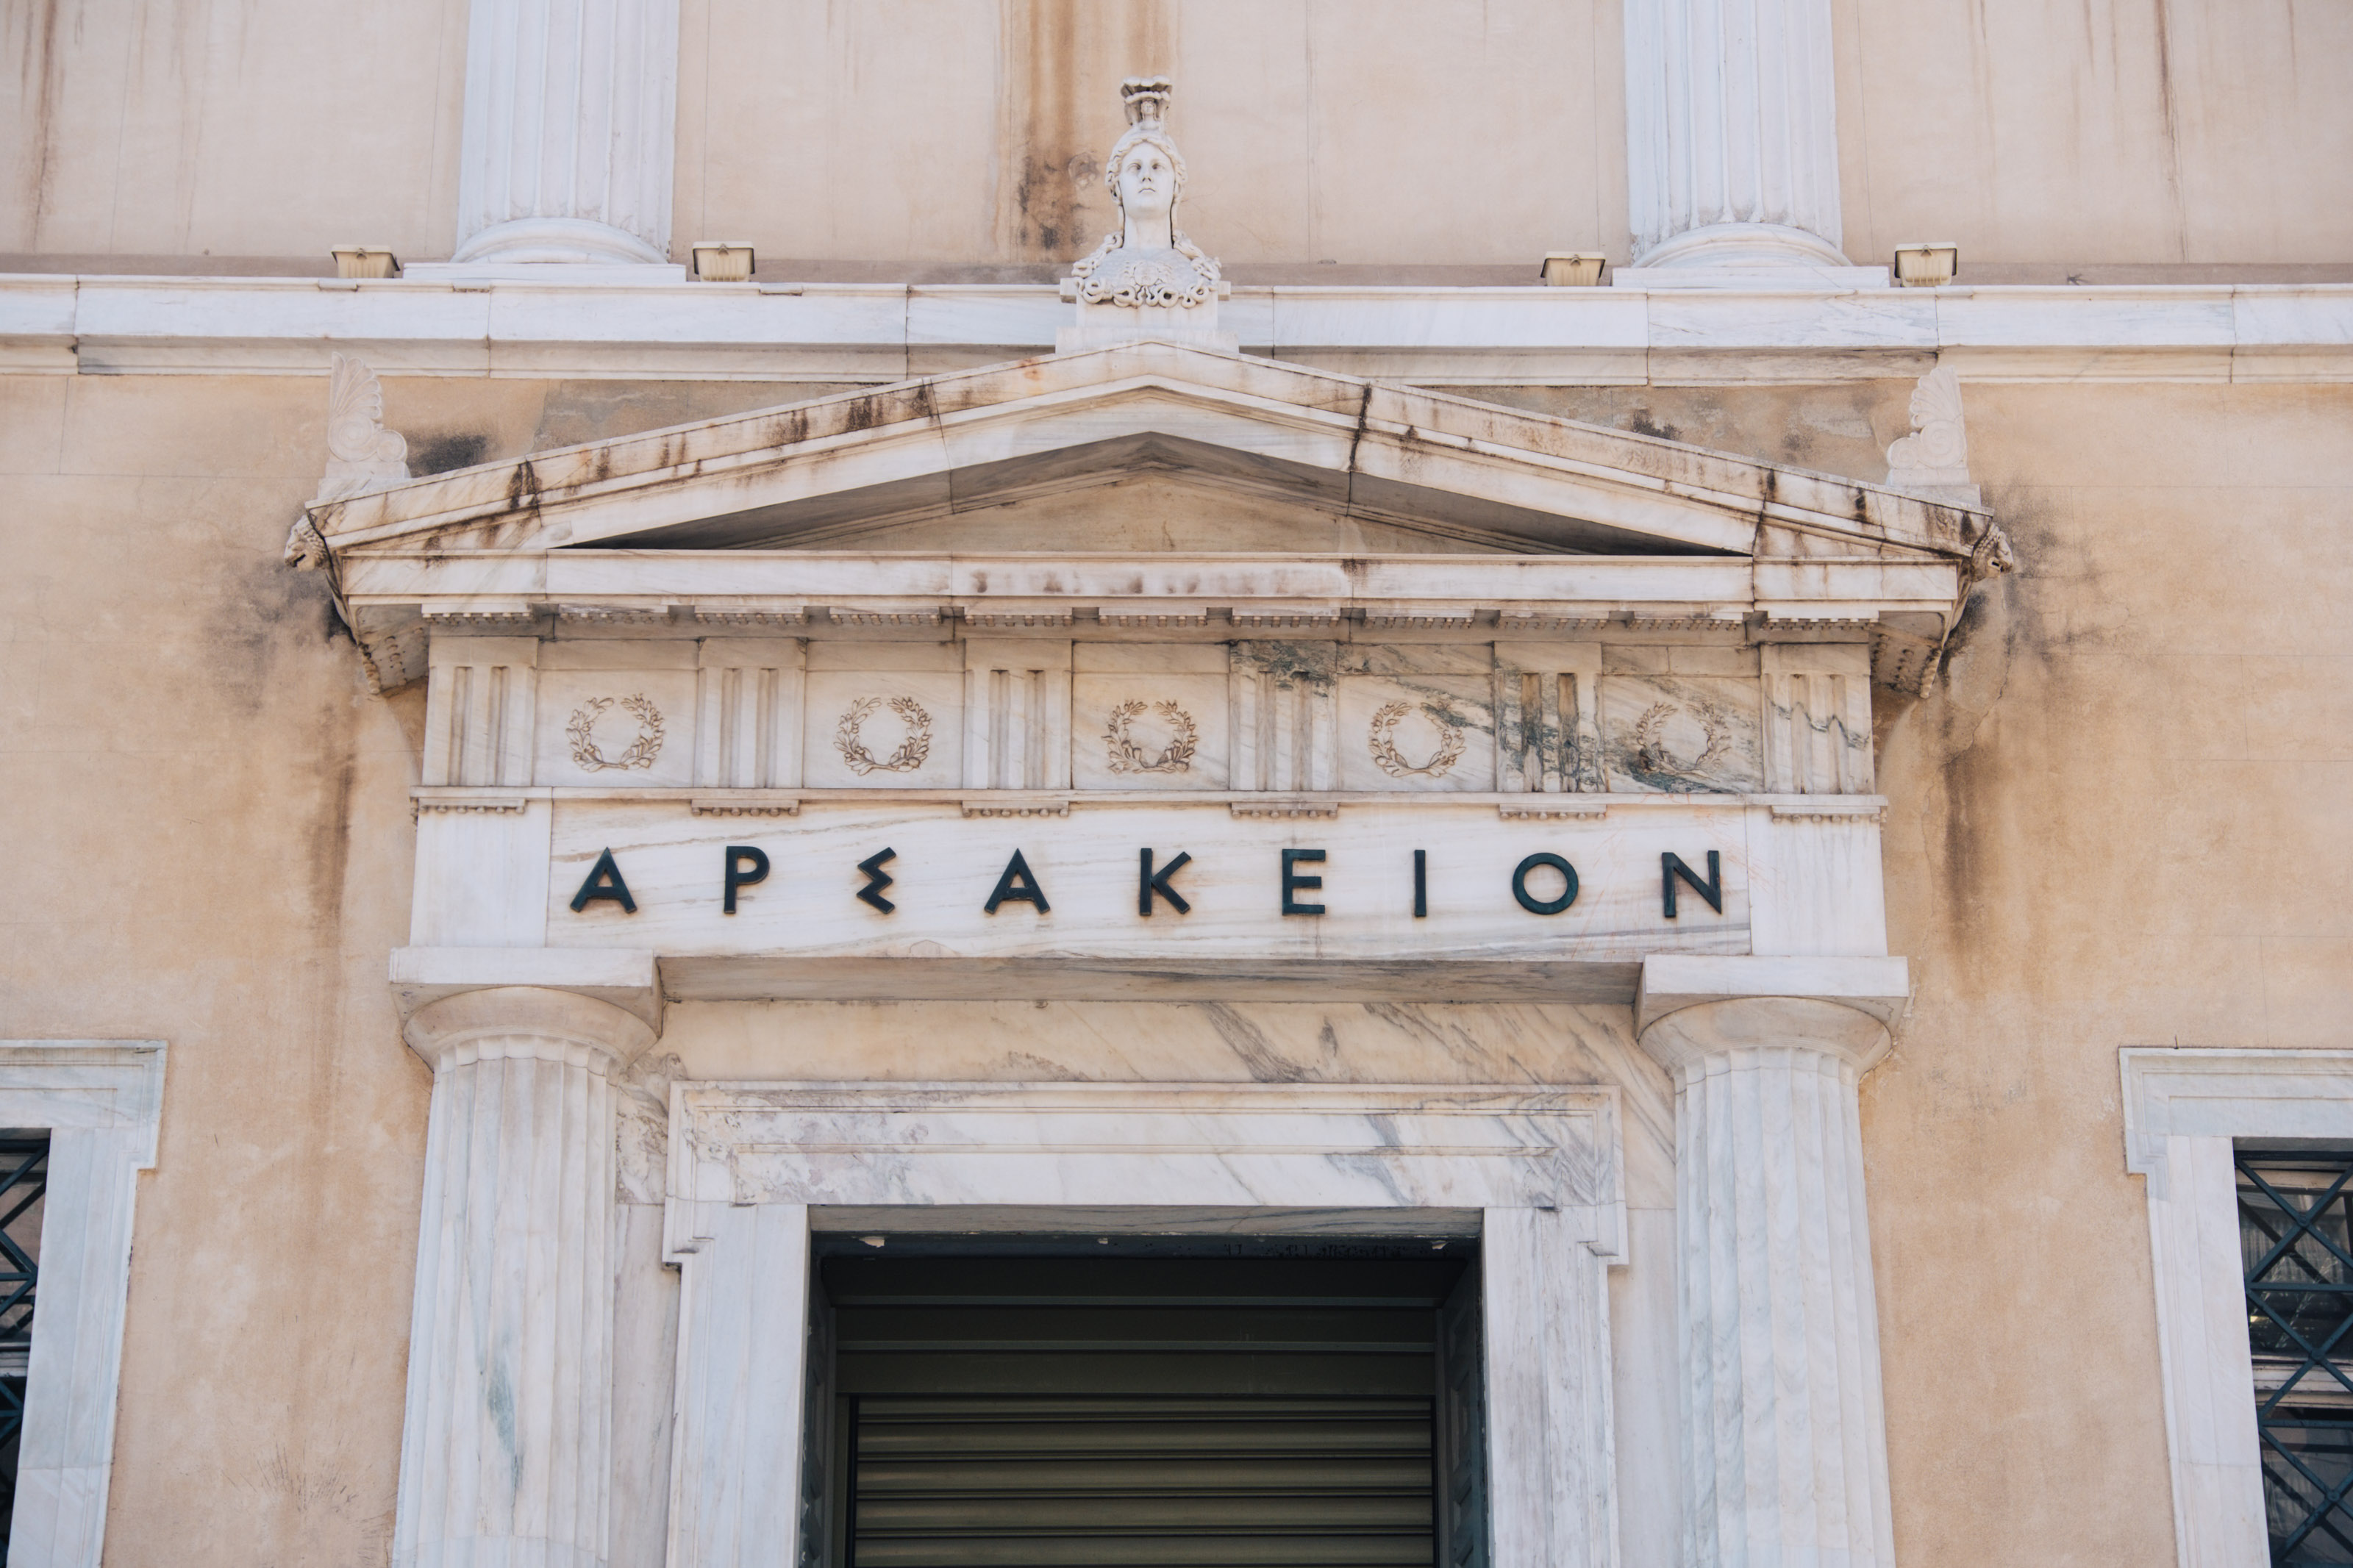 Authoritative Roman type at Arsakeion Megaron in central Athens. | Photo: Georgios Makkas 